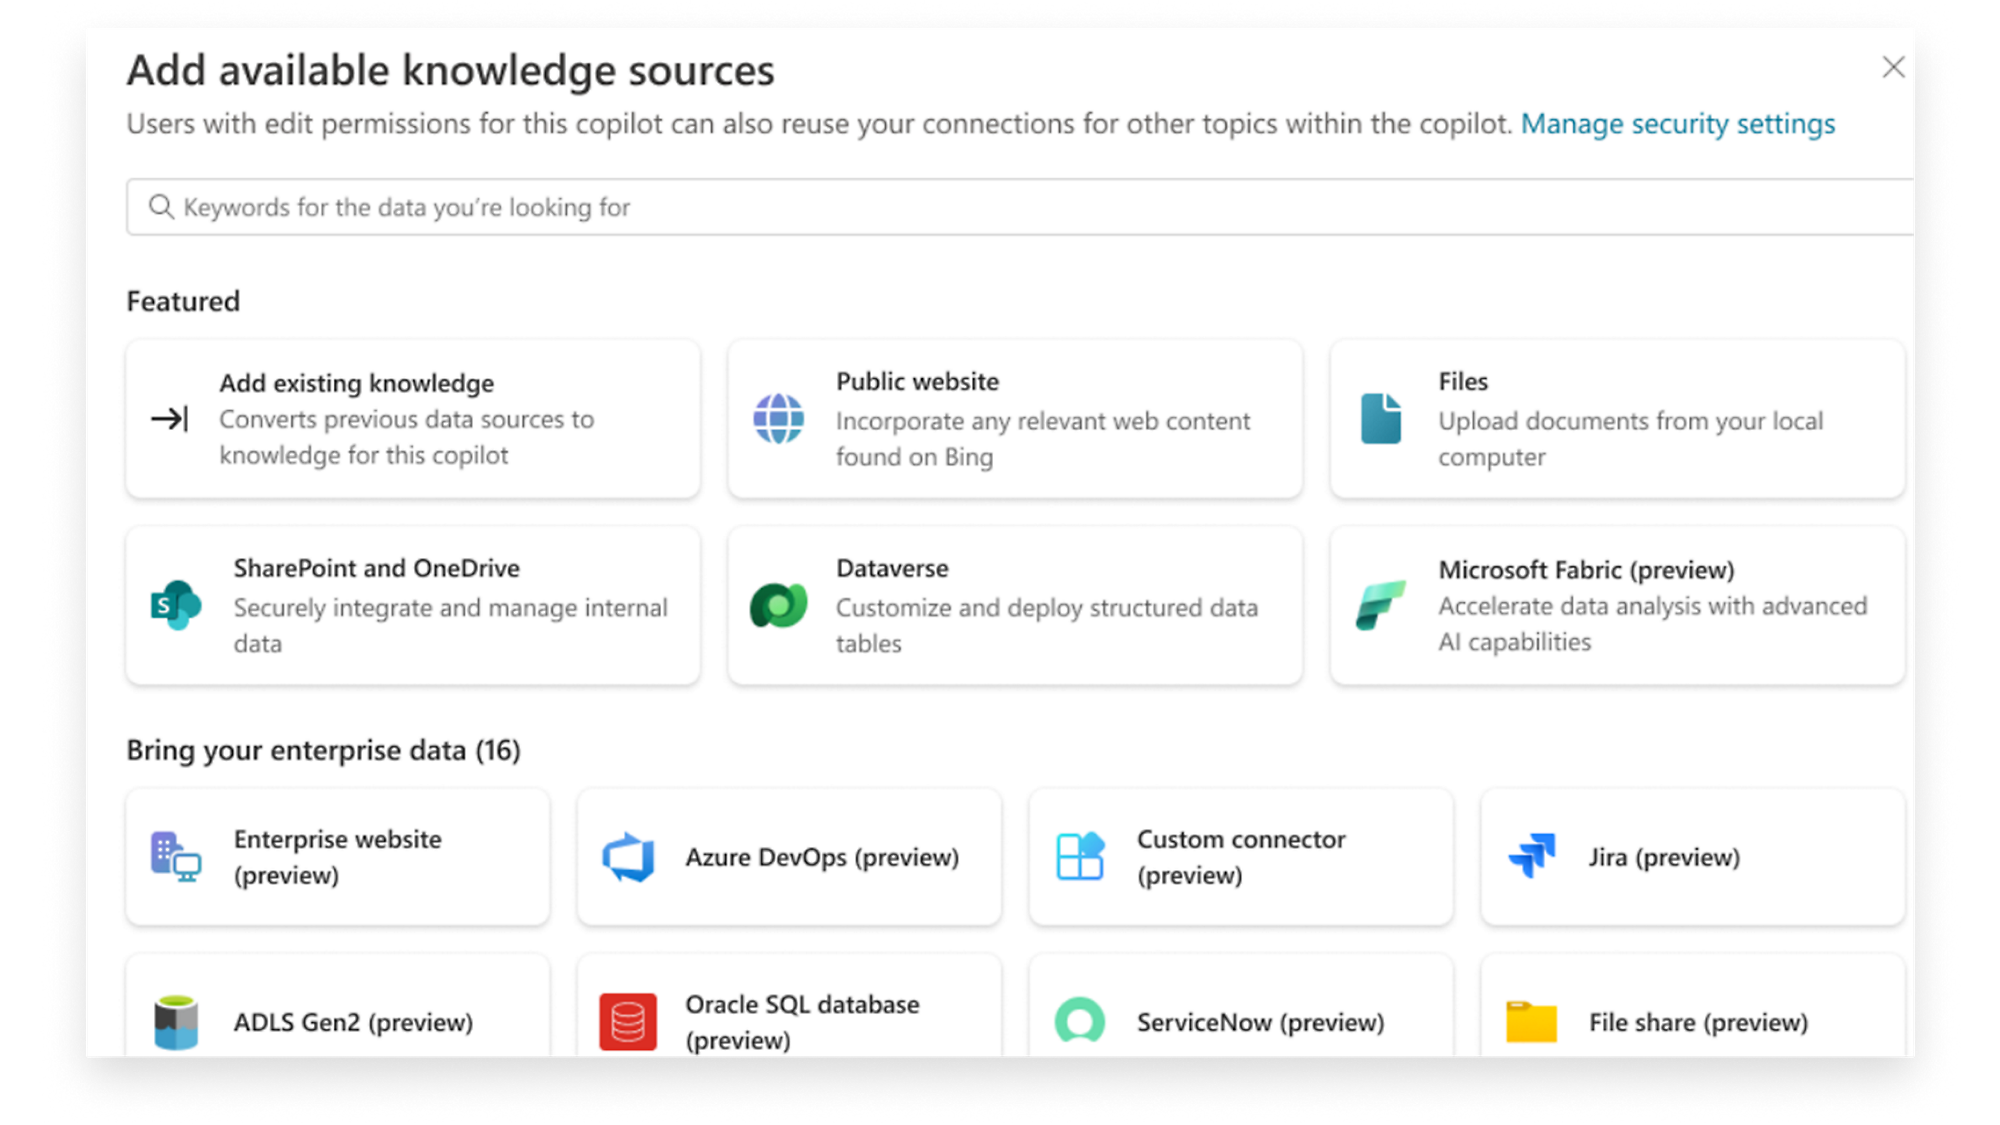 Aggiungi fonti di conoscenza, integra SharePoint, OneDrive, Dataverse, File e altro per l'arricchimento dati del copilota